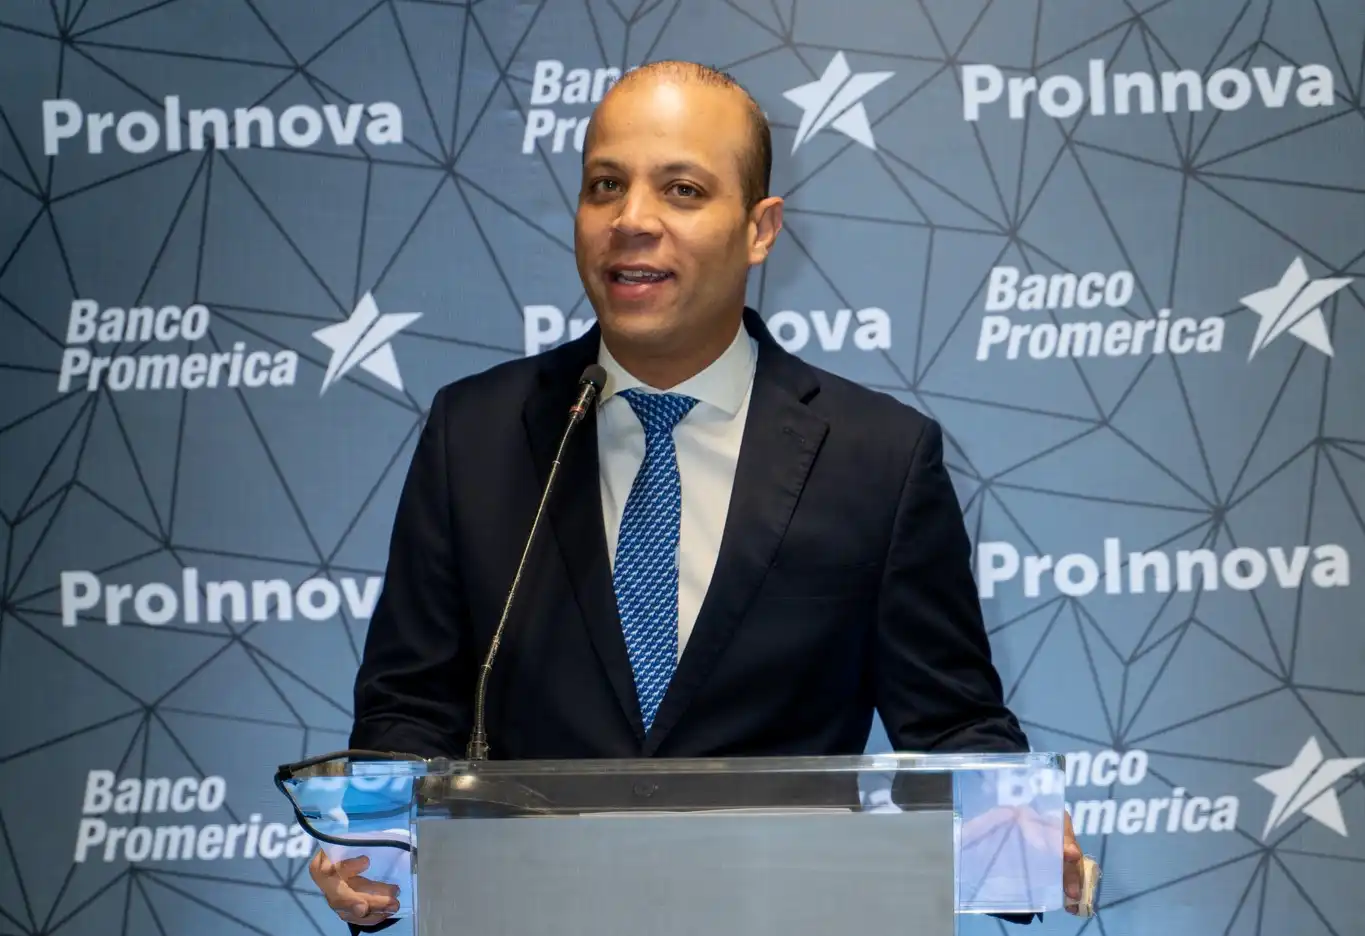 Banco Promerica lanza ProInnova